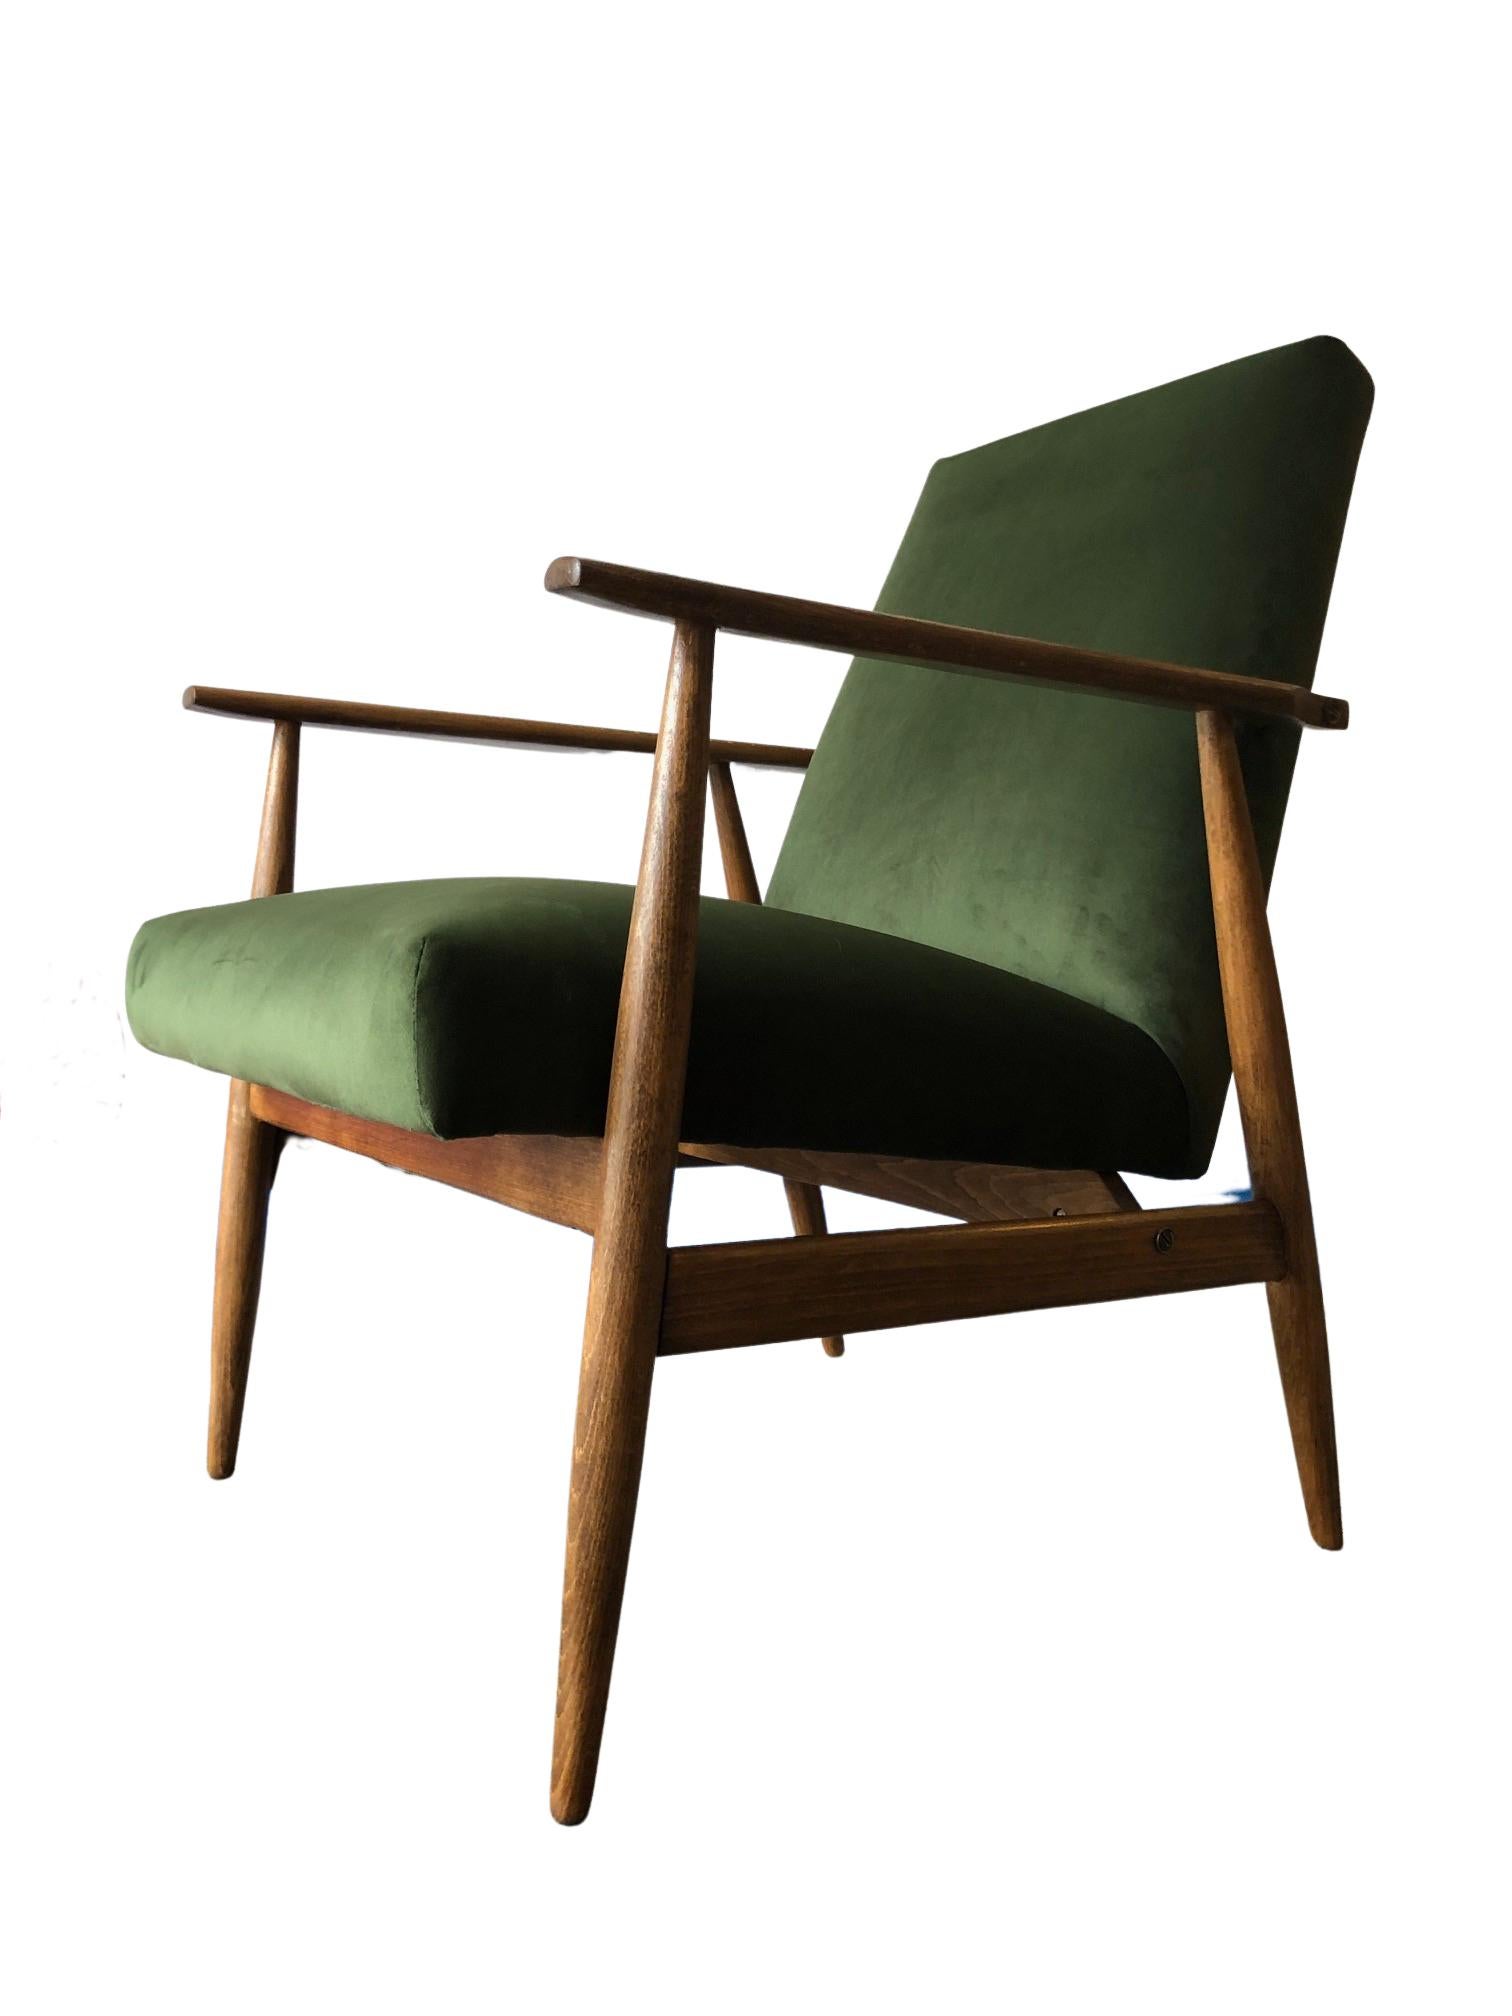 Le fauteuil conçu par Henryk Lis. La structure est réalisée en bois de hêtre dans une chaude couleur noyer, avec une finition en vernis satiné semi-mat. Le rembourrage est en velours de haute qualité dans une belle couleur verte. Le fauteuil a été